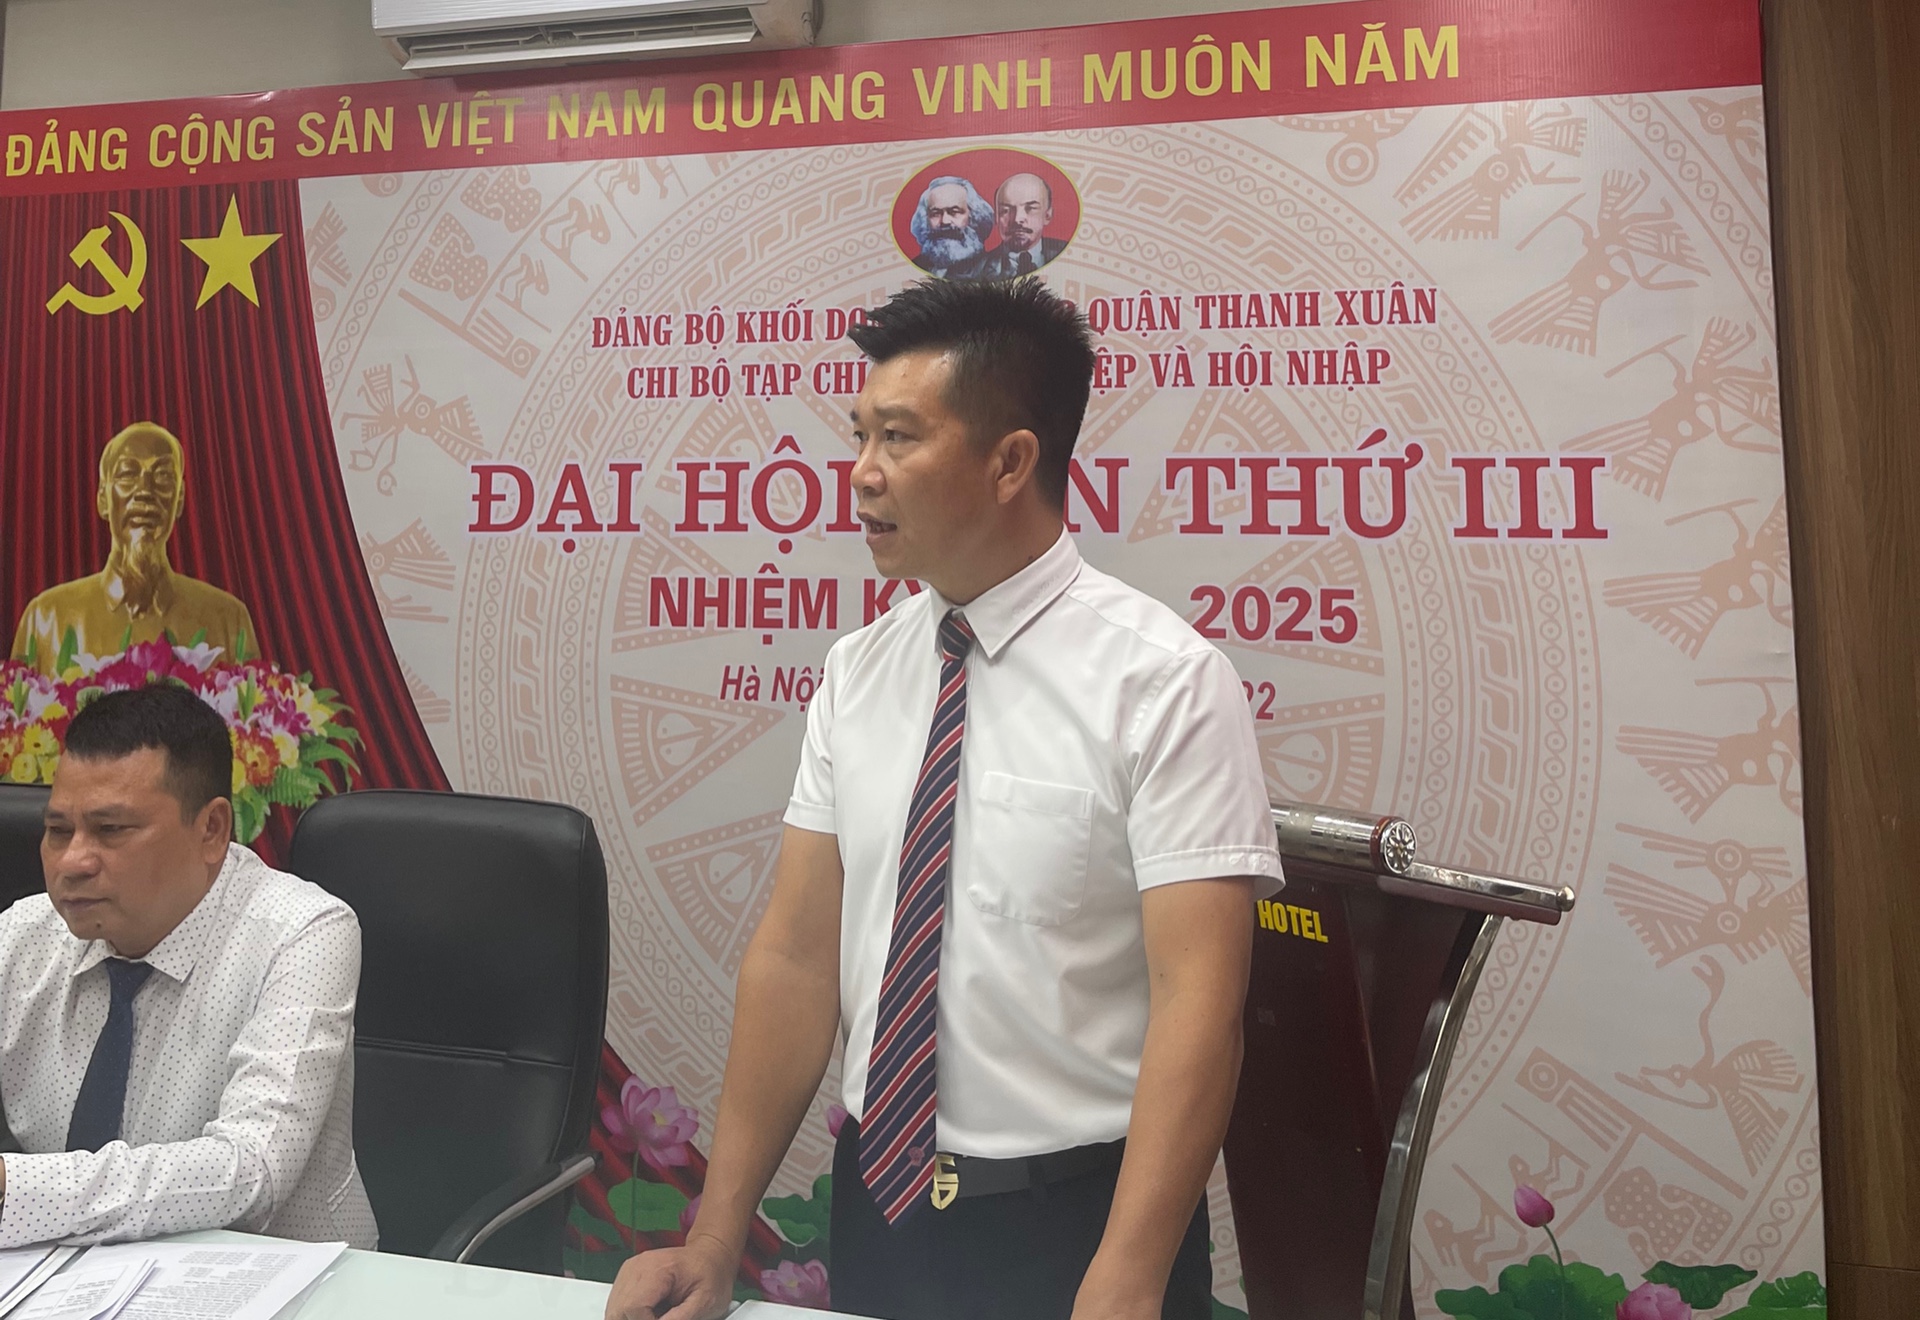 đồng chí Nguyễn Văn Minh – Quận ủy viên, Bí thư Đảng bộ Khối Doanh nghiệp